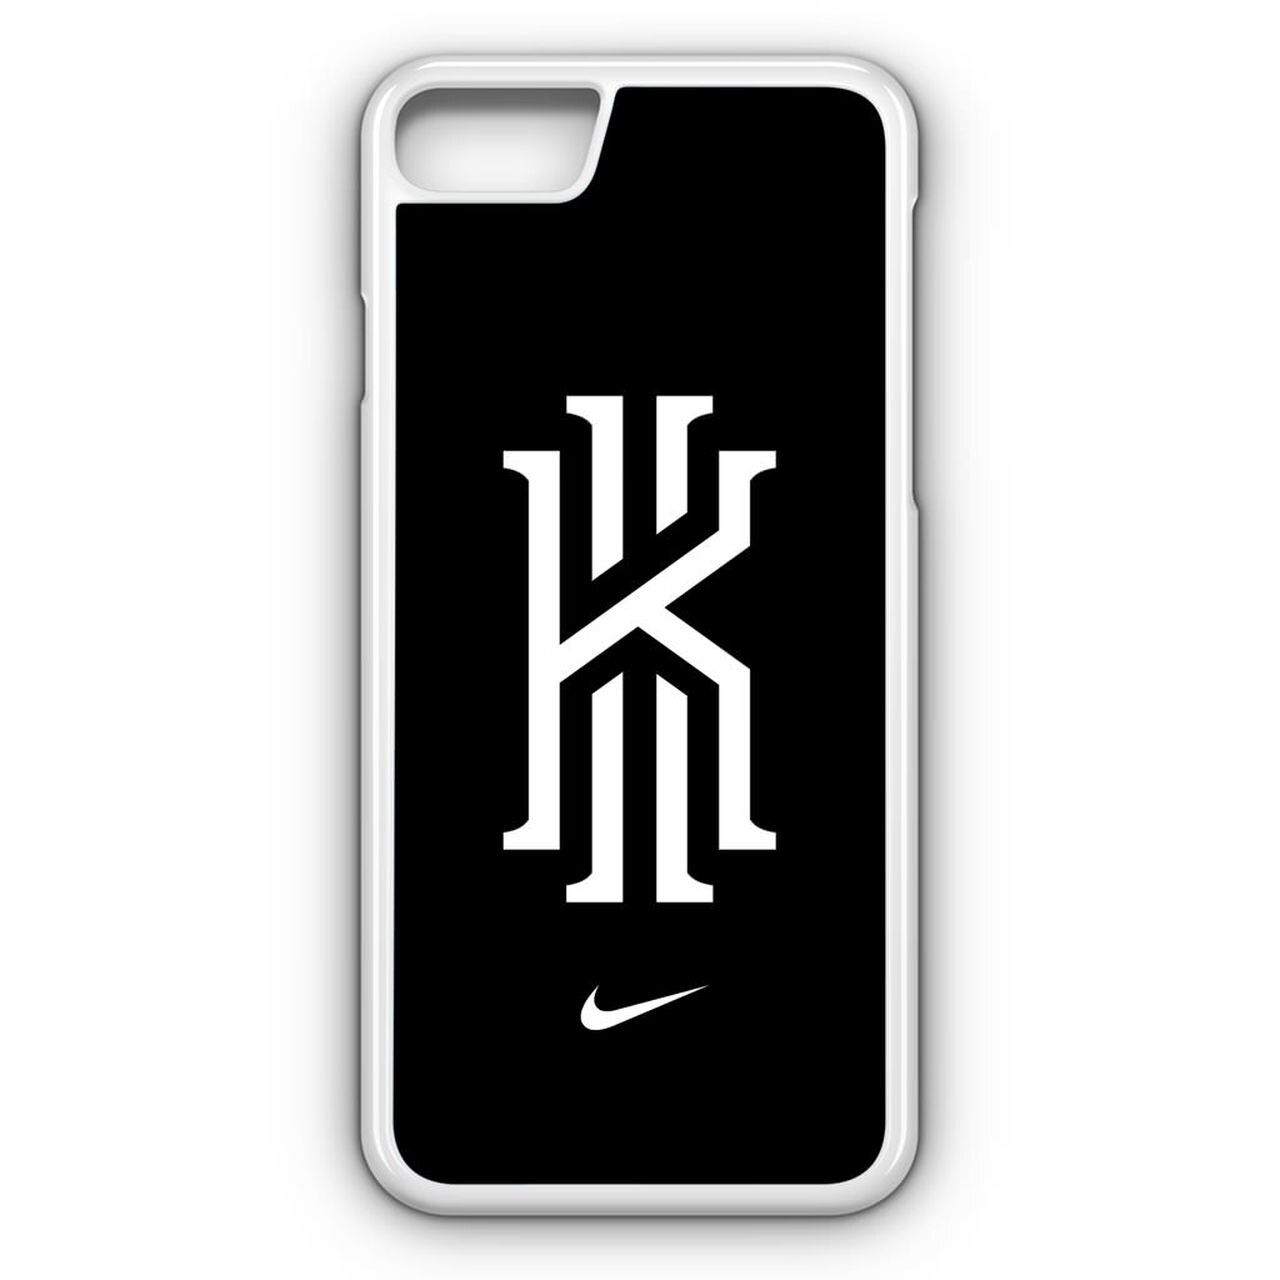 Iphone 11 Nike Case 1280x1280 Wallpaper Teahub Io